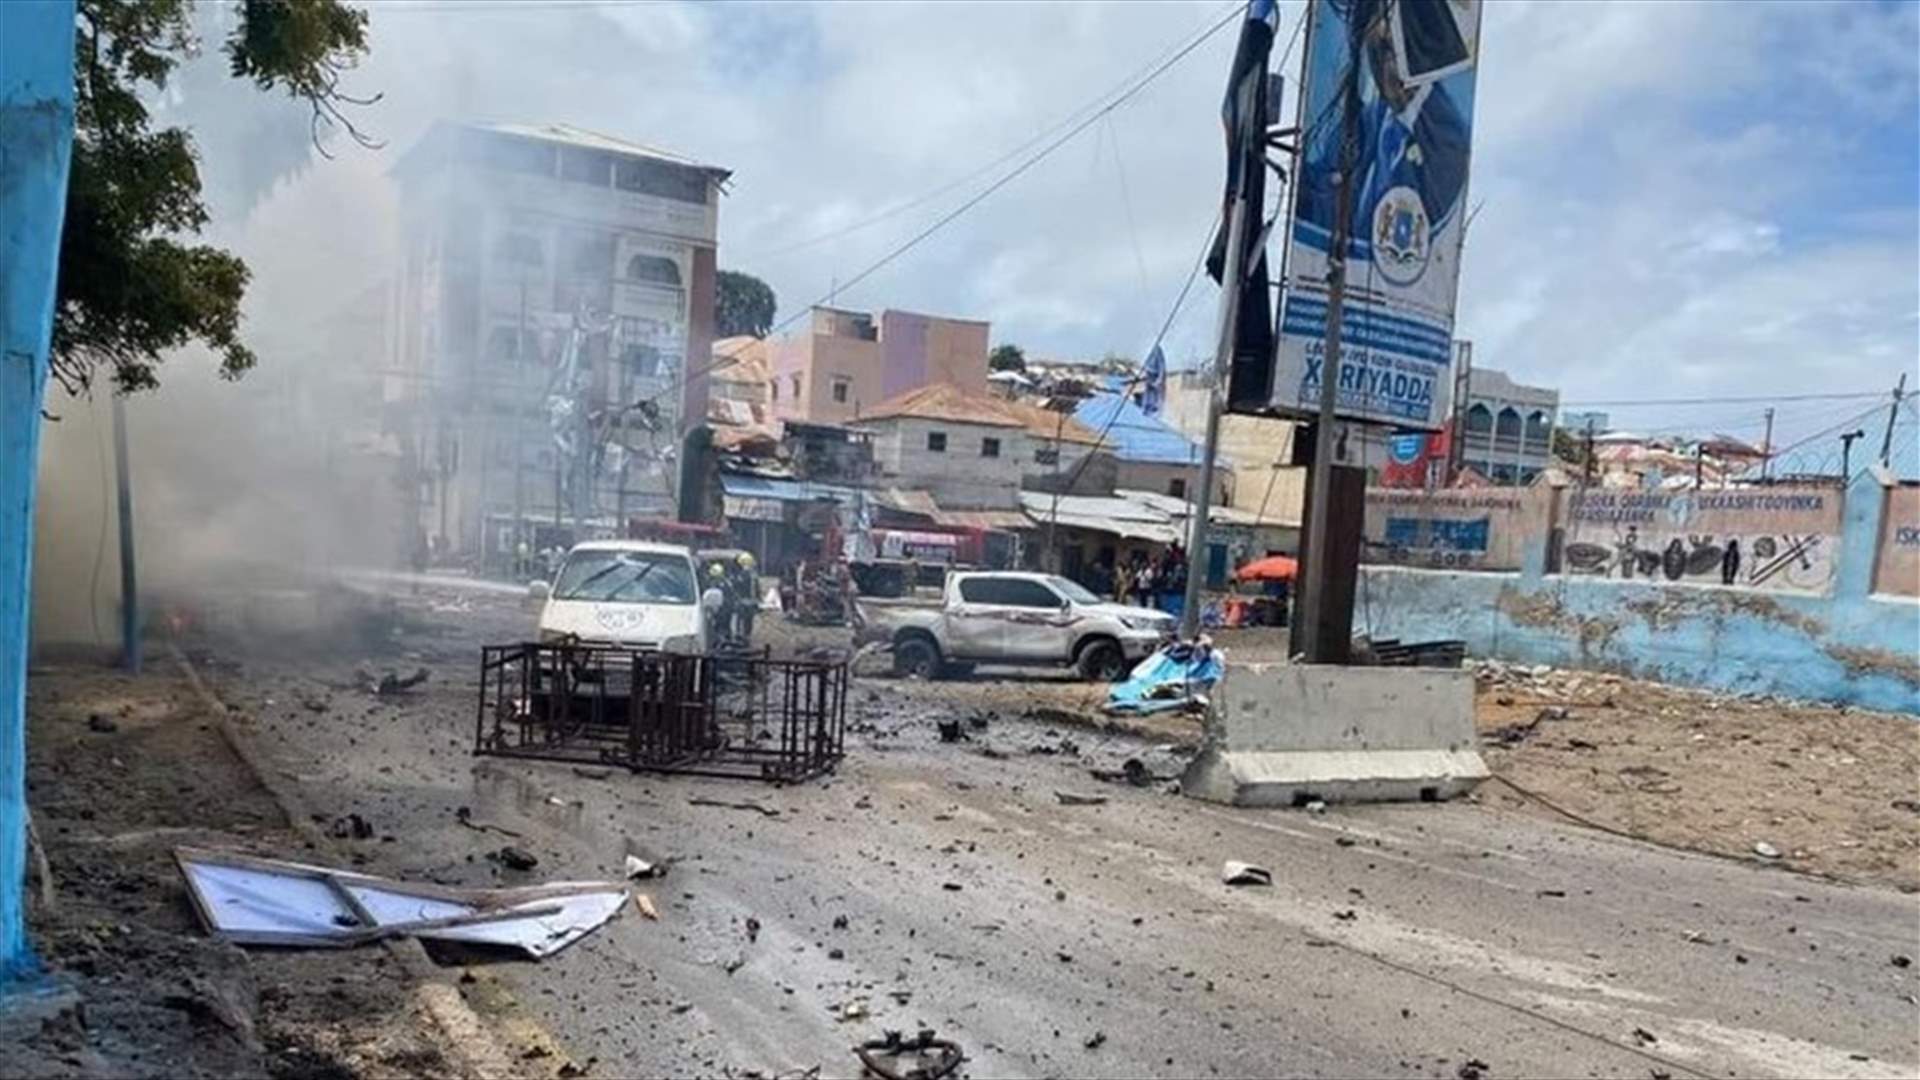 ثمانية قتلى في هجوم بسيارة مفخخة قرب القصر الرئاسي في الصومال